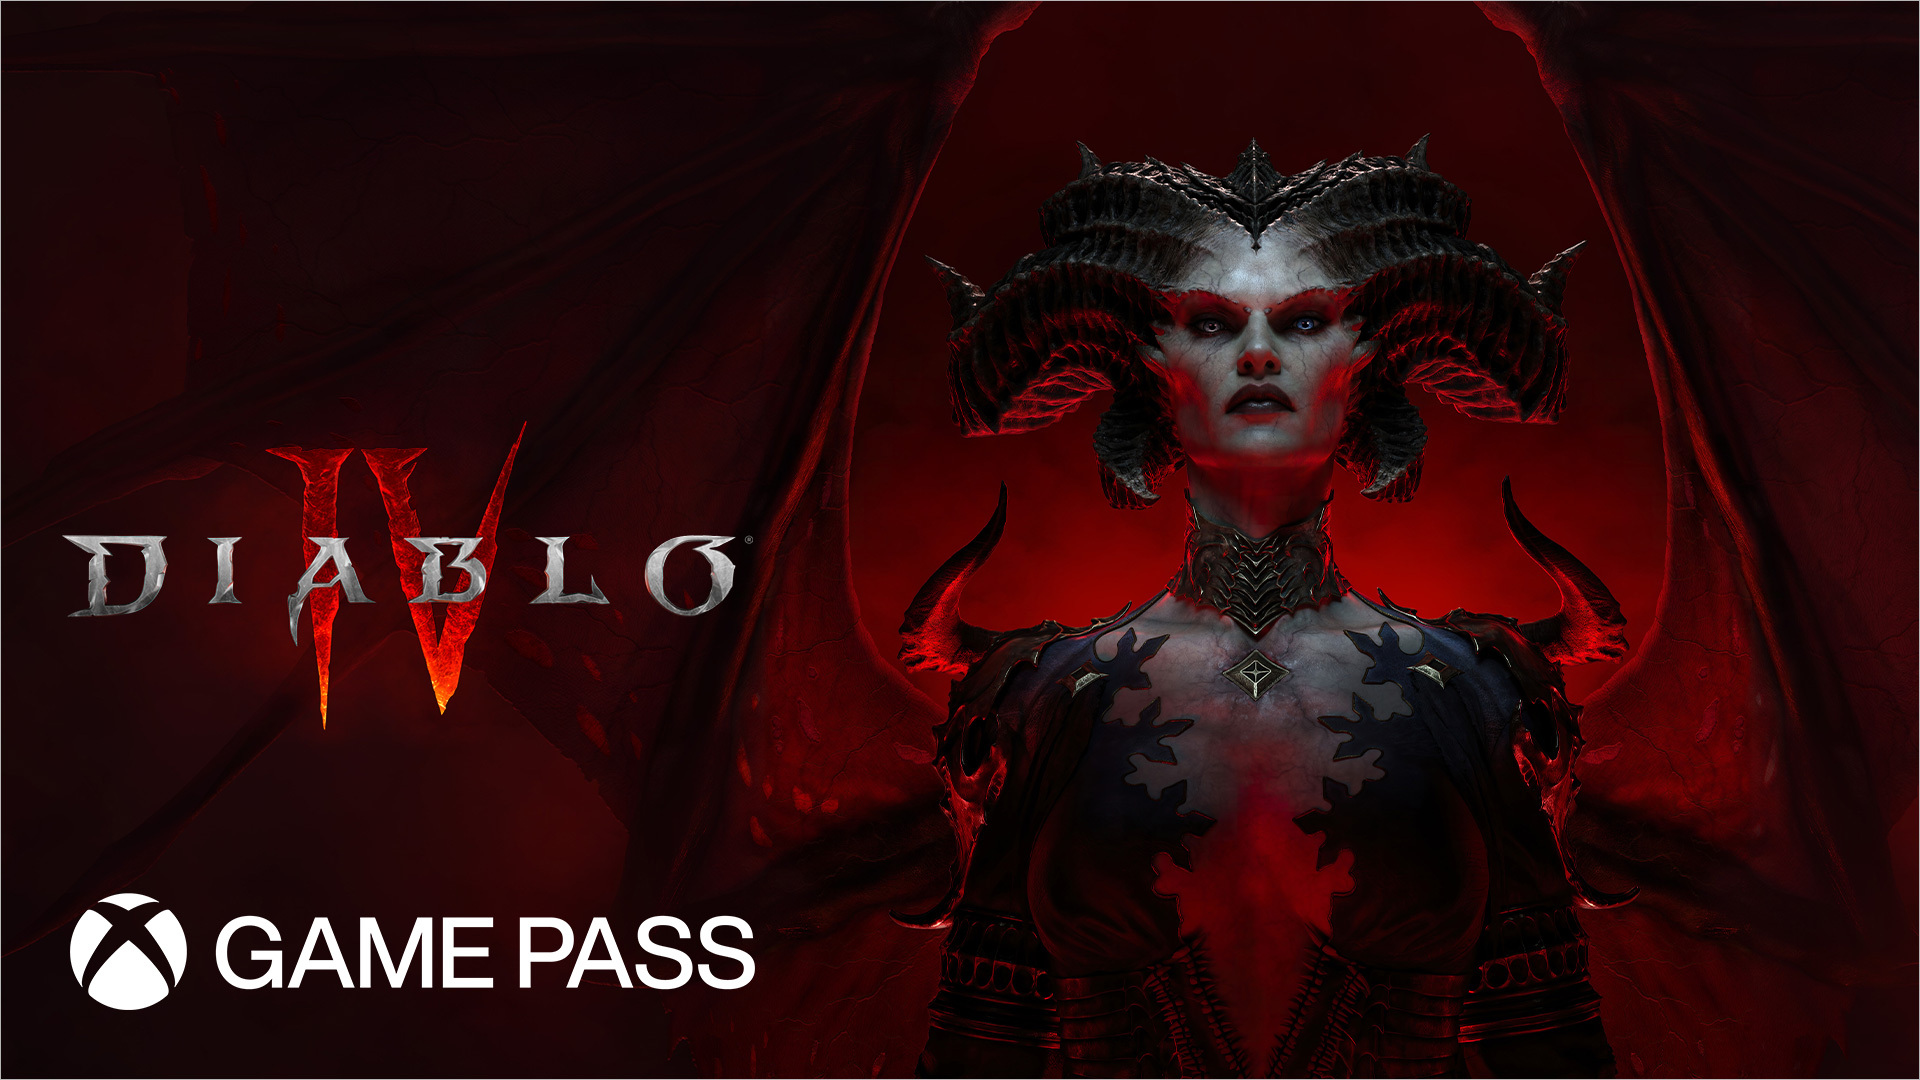 《暗黑破坏神4》将于本周登陆Xbox Game Pass《Diablo IV》